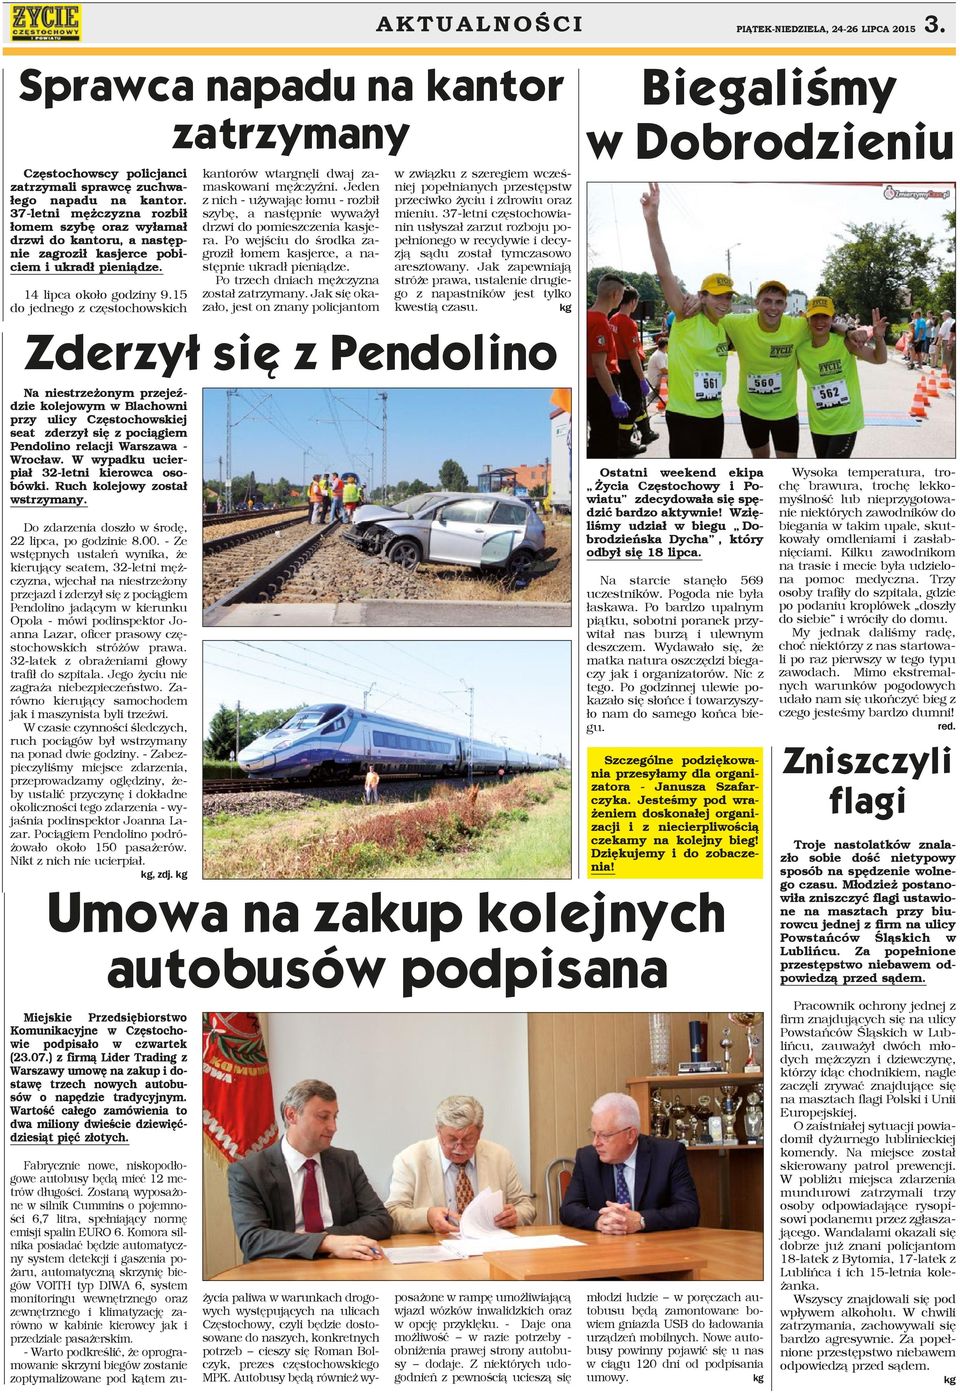 15 do jednego z częstochowskich Miejskie Przedsiębiorstwo Komunikacyjne w Częstochowie podpisało w czwartek (23.07.